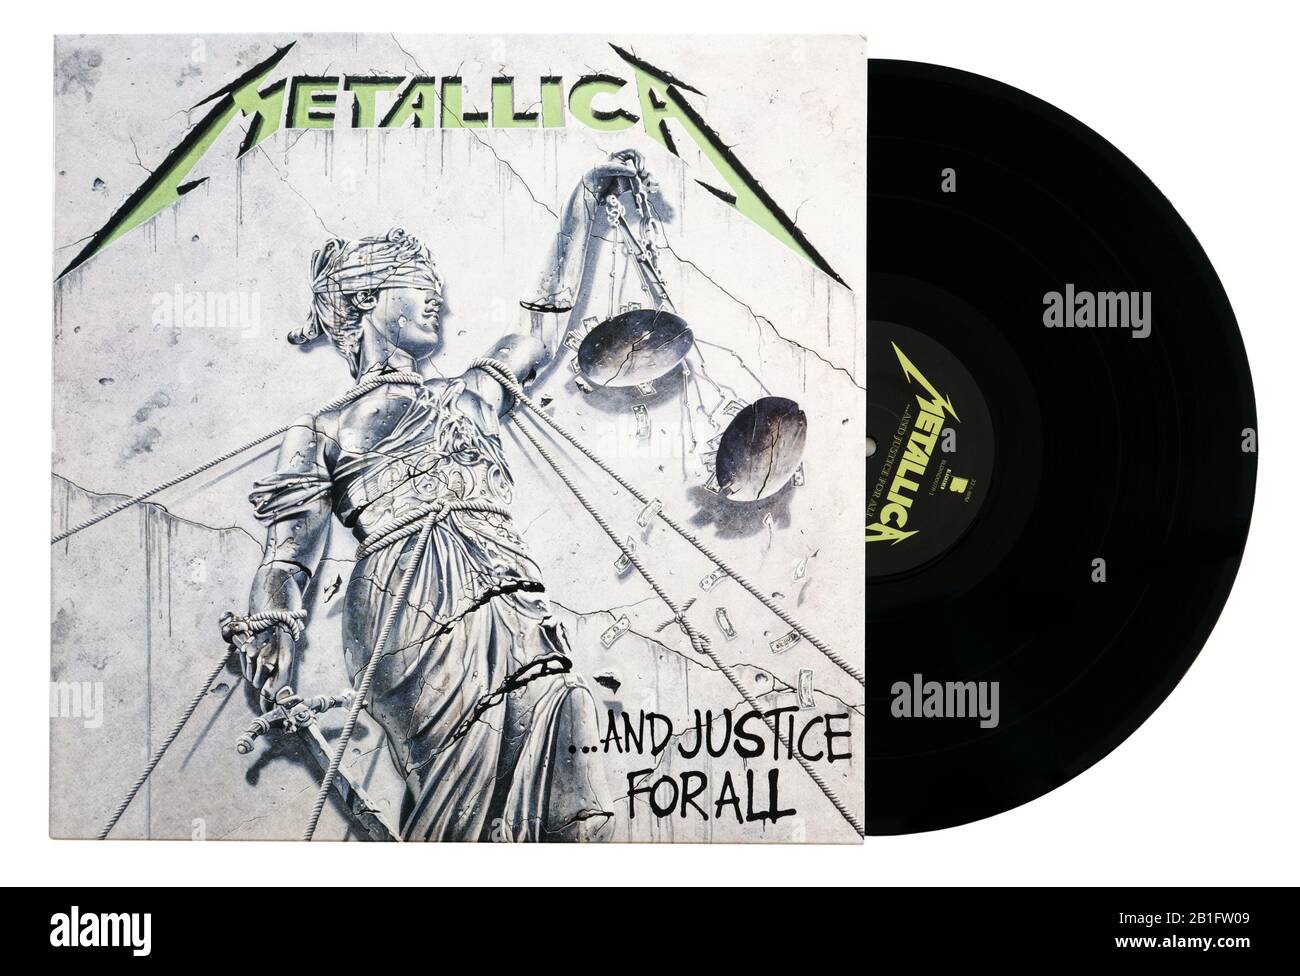 Album classique en métal lourd Et justice Pour Tous par Metalica sur vinyle Banque D'Images